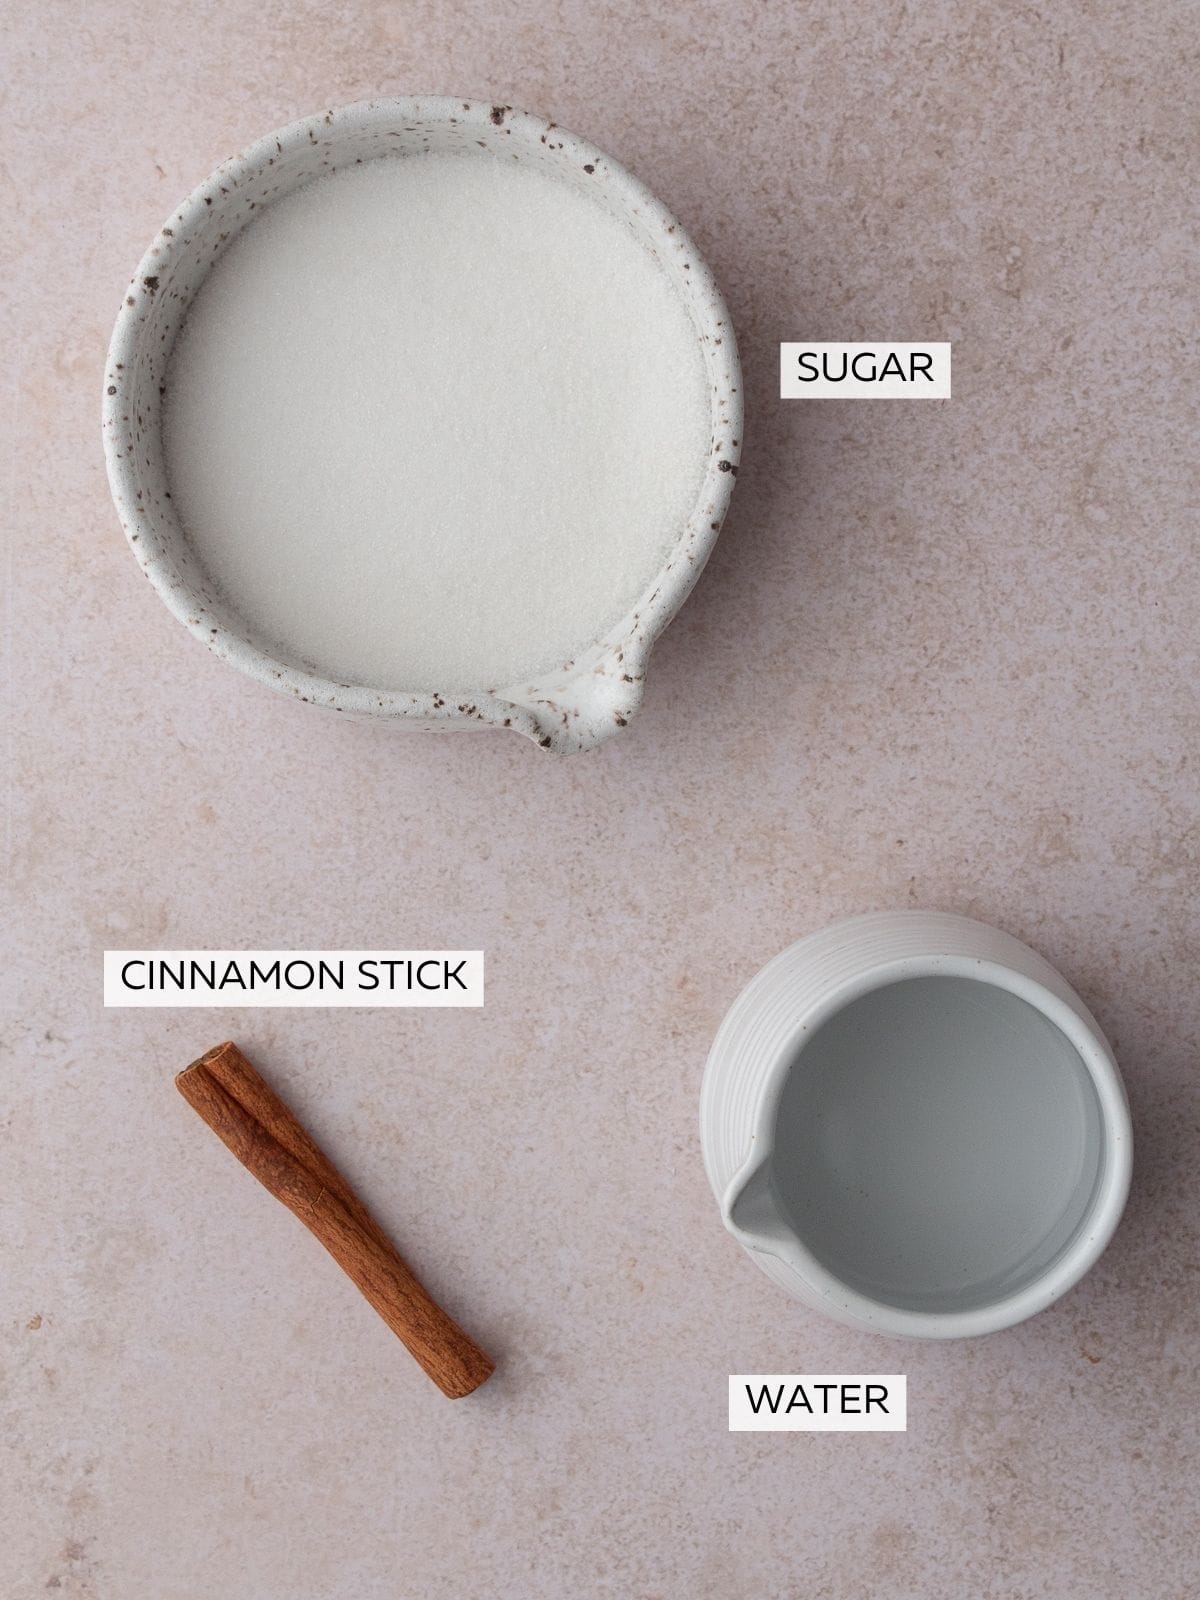 Cinnamon simple syrup ingredients